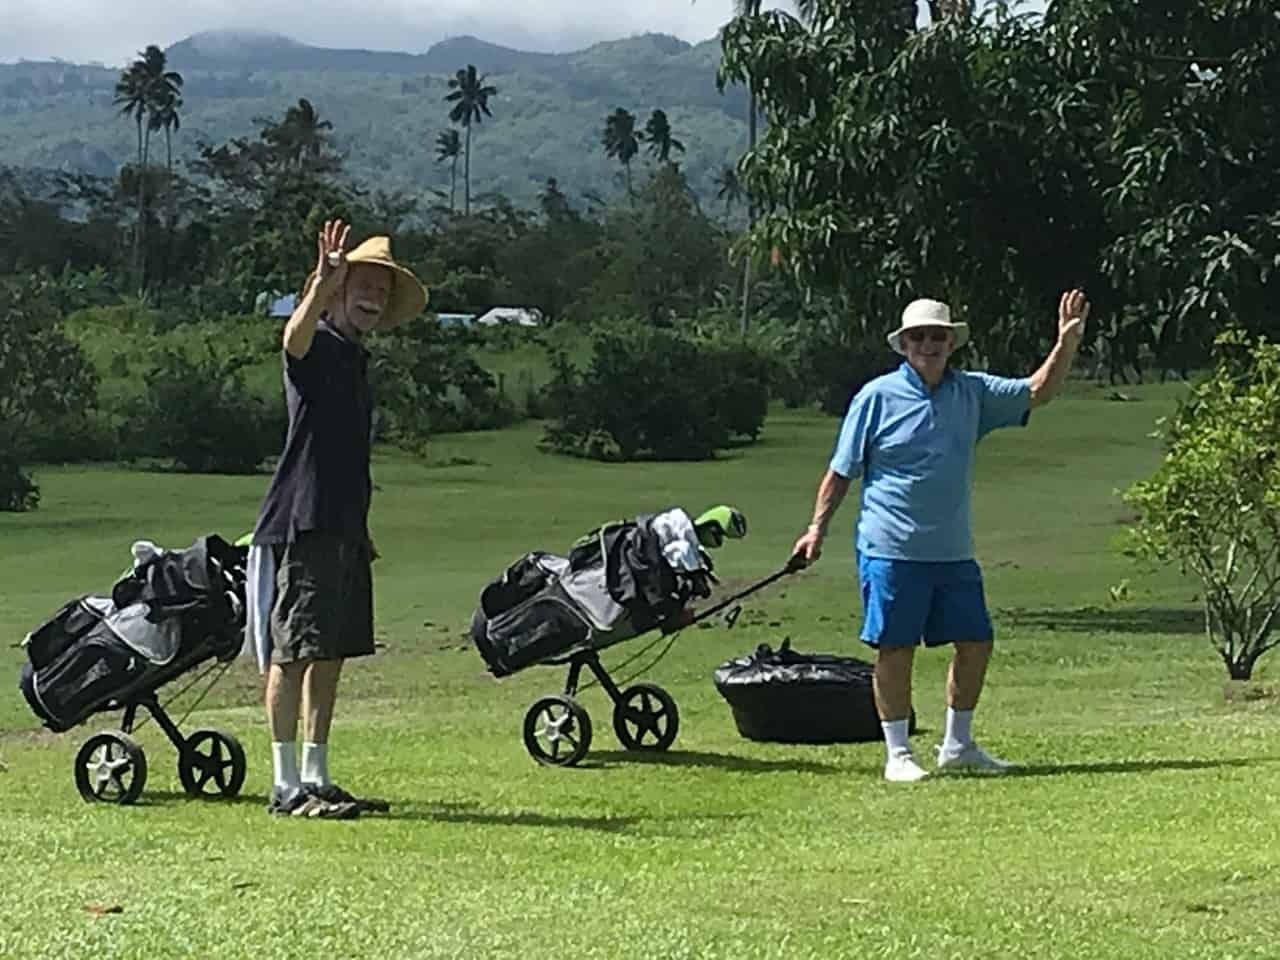 Independent Travel Samoa tour - golf at Sinalei Reef Resort